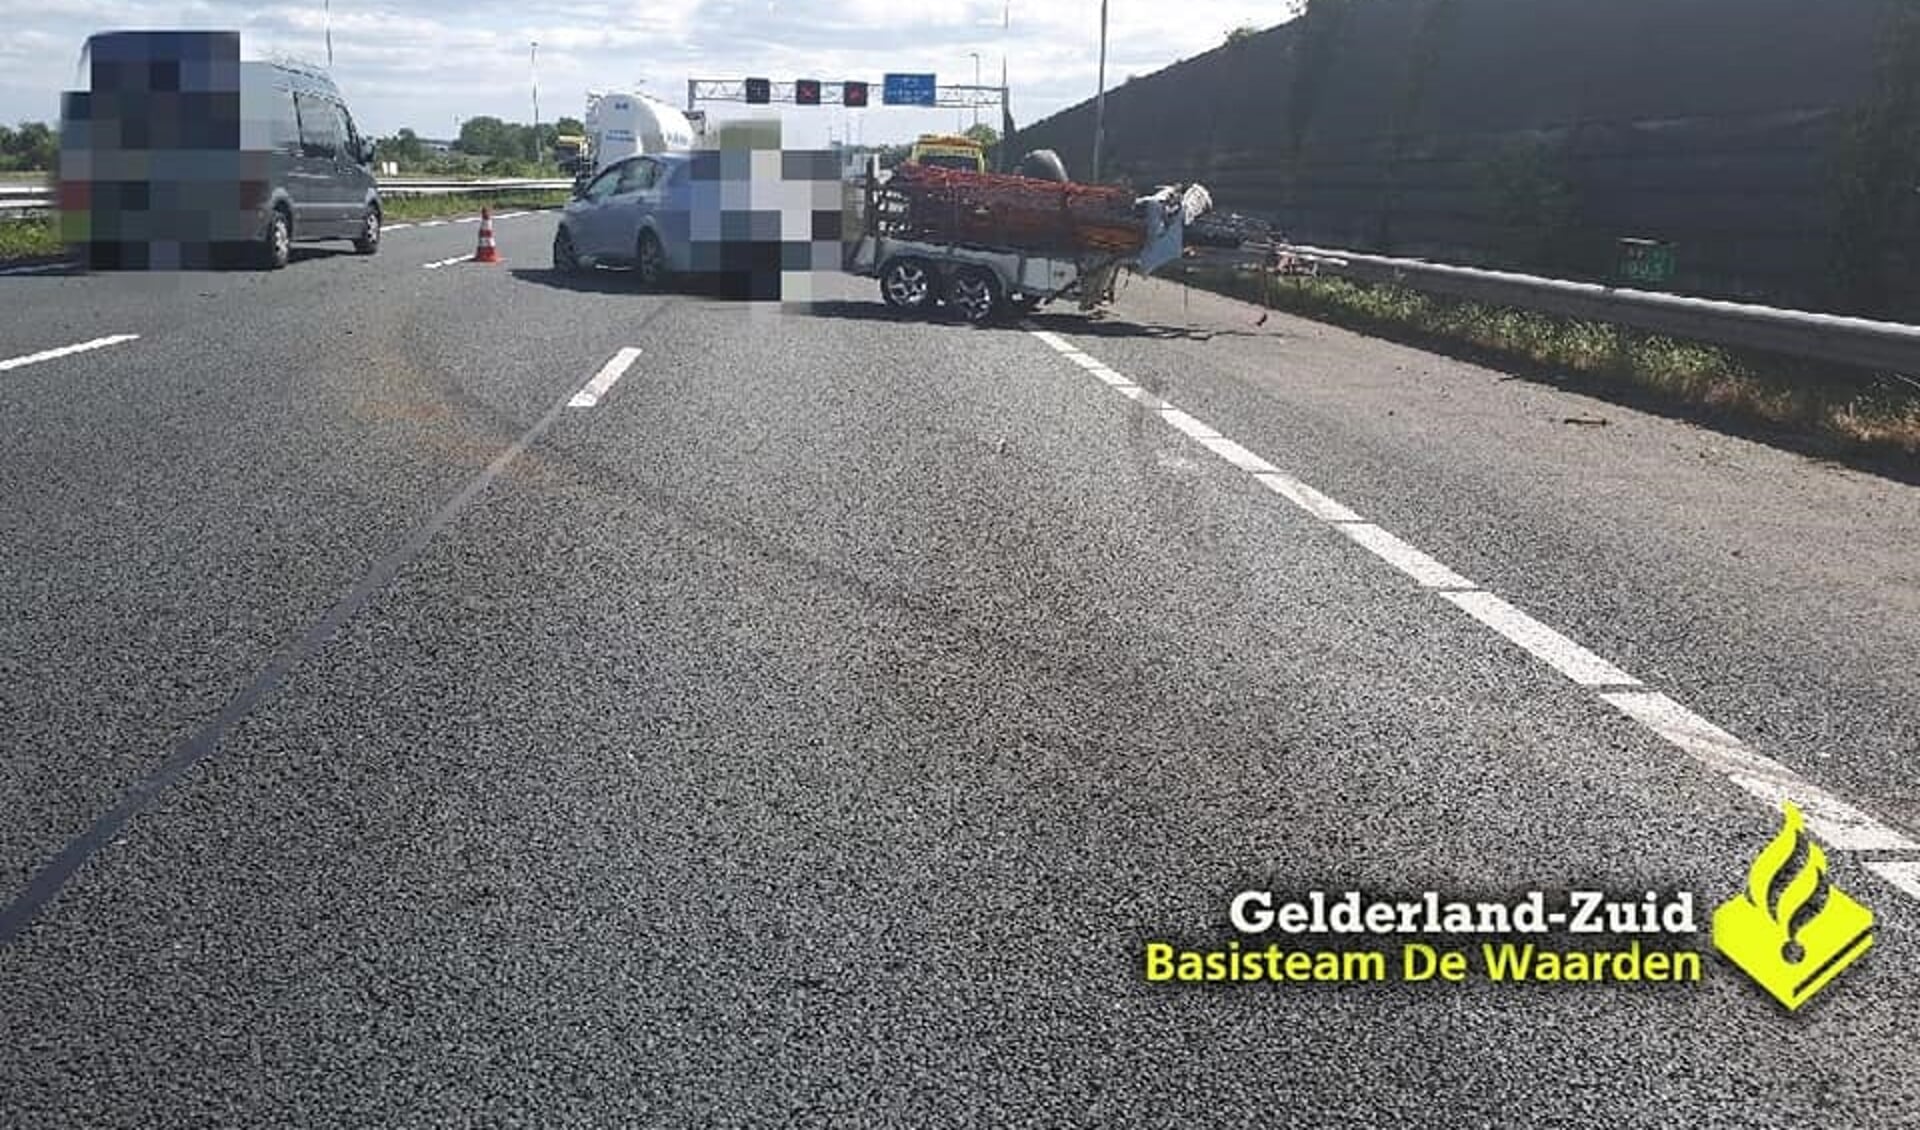 Foto: Facebook, Gelderland-Zuid, Basisteam De Waarden